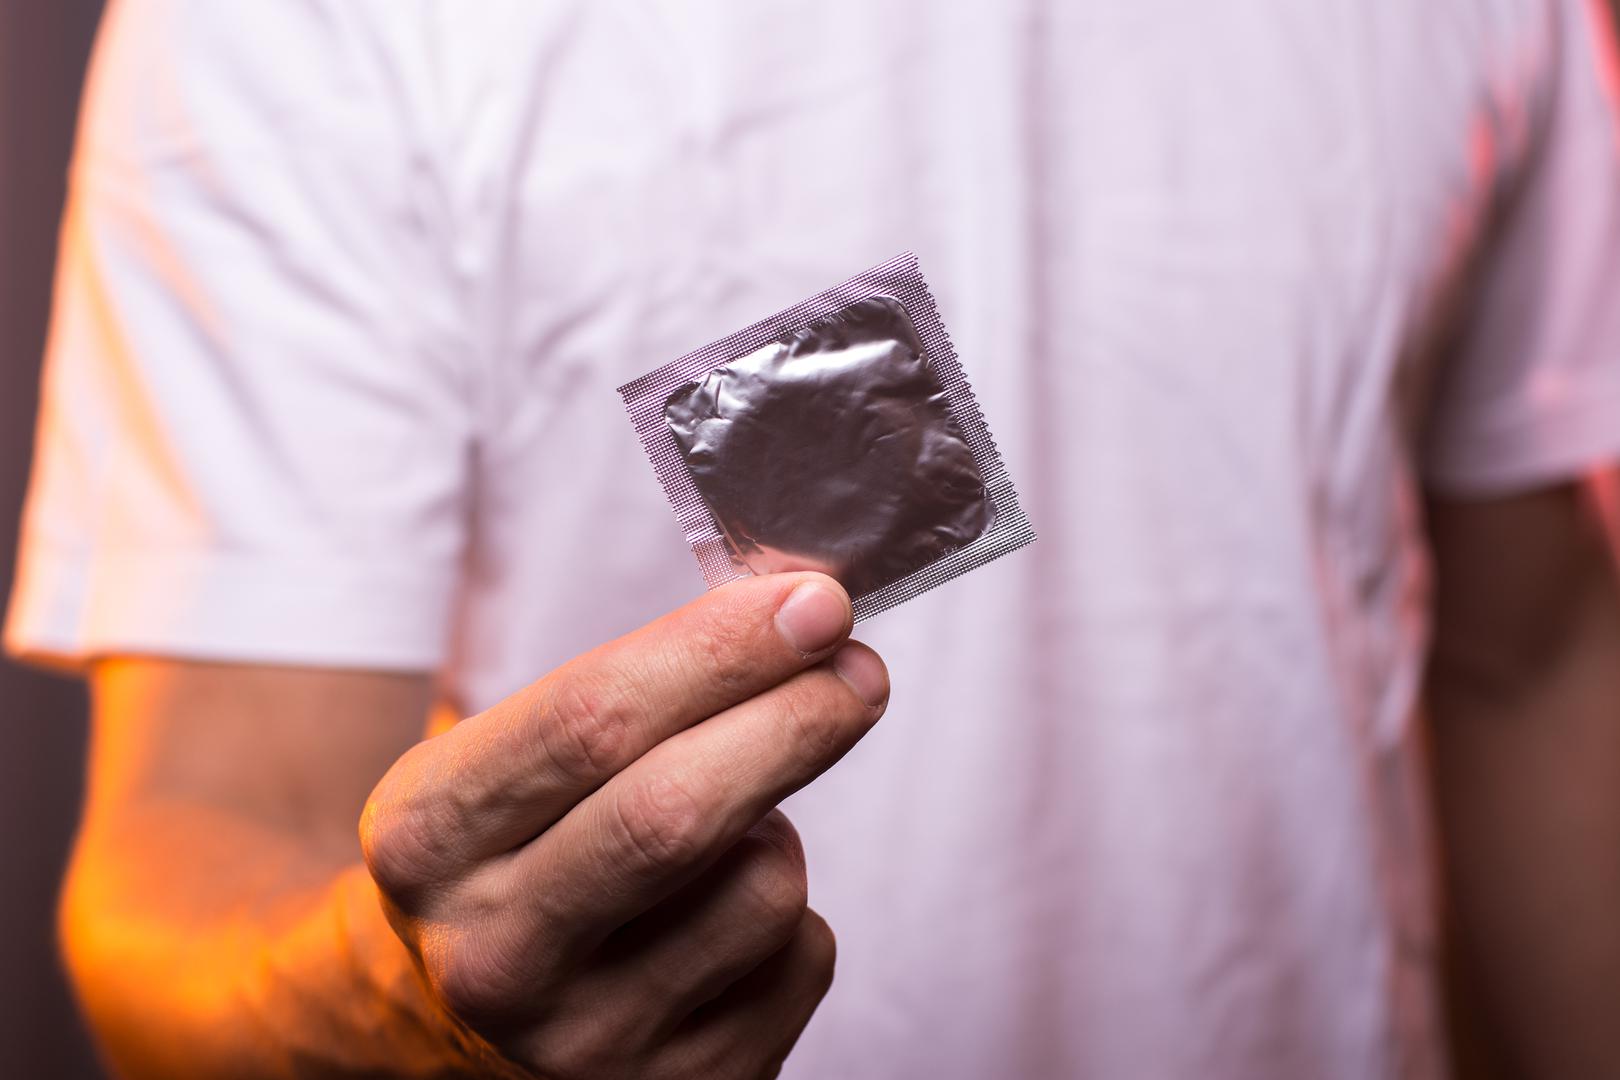 Dobra vijest stiže iz Bostona, tamošnja tvrtka myONE Perfect Fit proizvodi kondome u čak 60 različitih veličina, širina i dužina kako bi ovoj problematici konačno stali na kraj. 